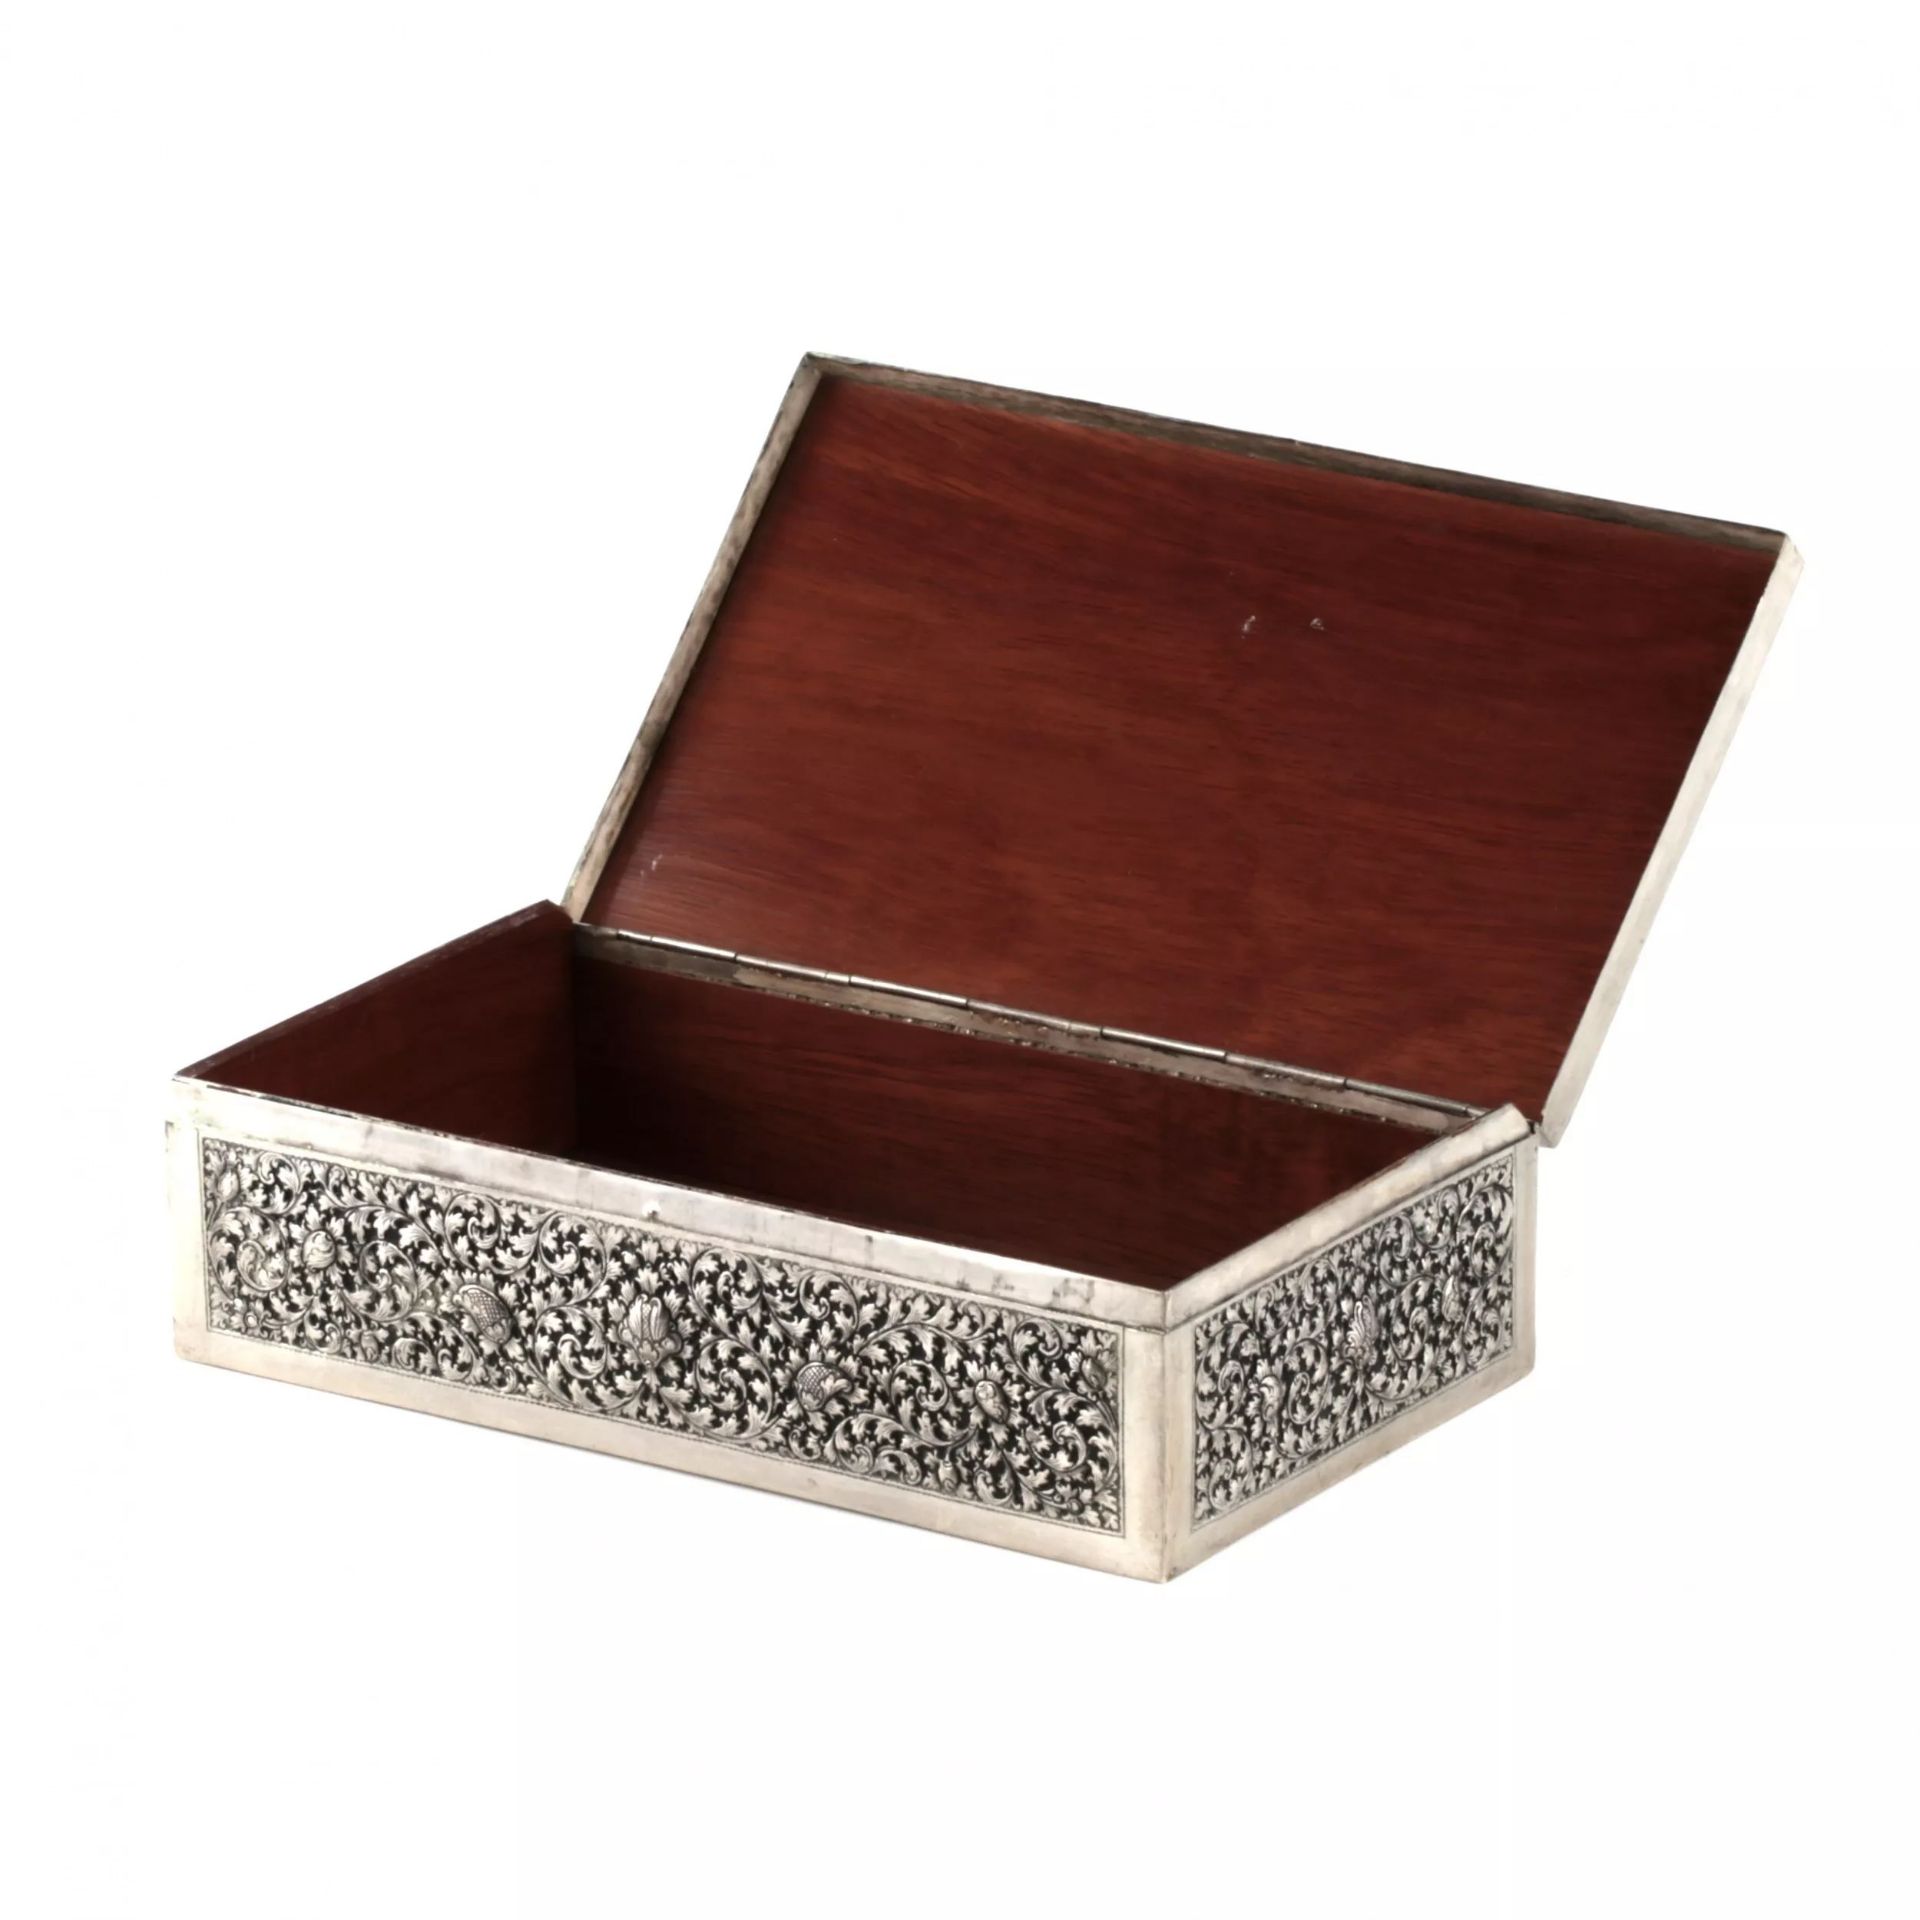 Silver cigar box. - Image 4 of 8